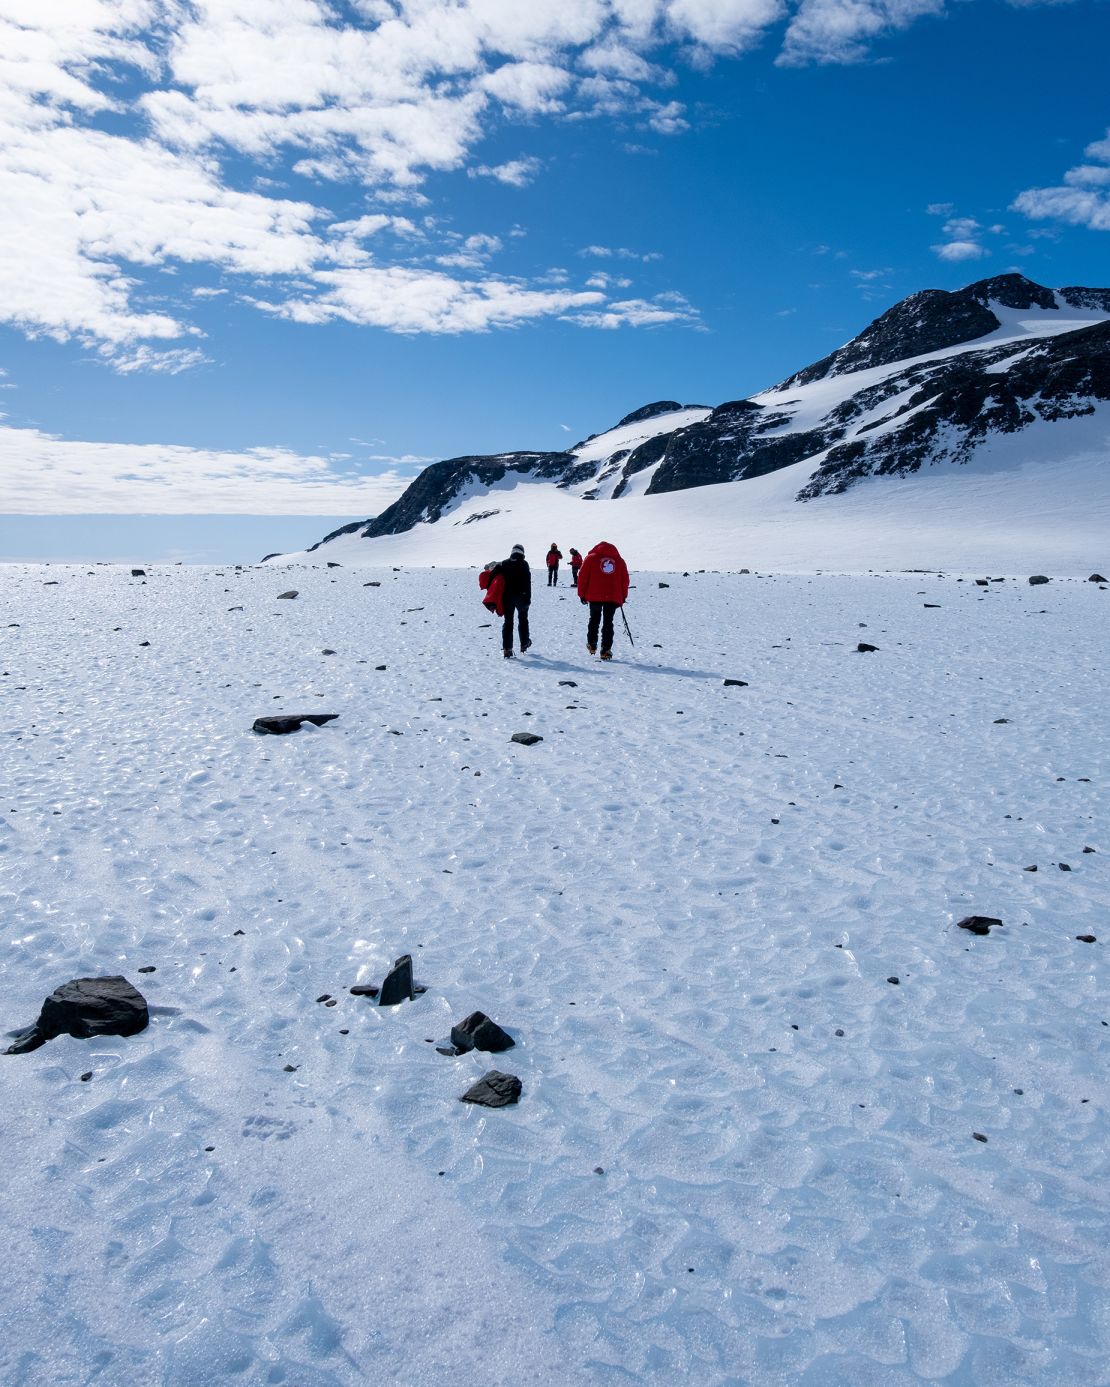 Метеориты исчезают в антарктических льдах, говорится в новом исследовании, в результате климатического кризиса. Отбор проб льда проводится на участке голубого льда во время полевой миссии Чилийского антарктического института в 2022 году.